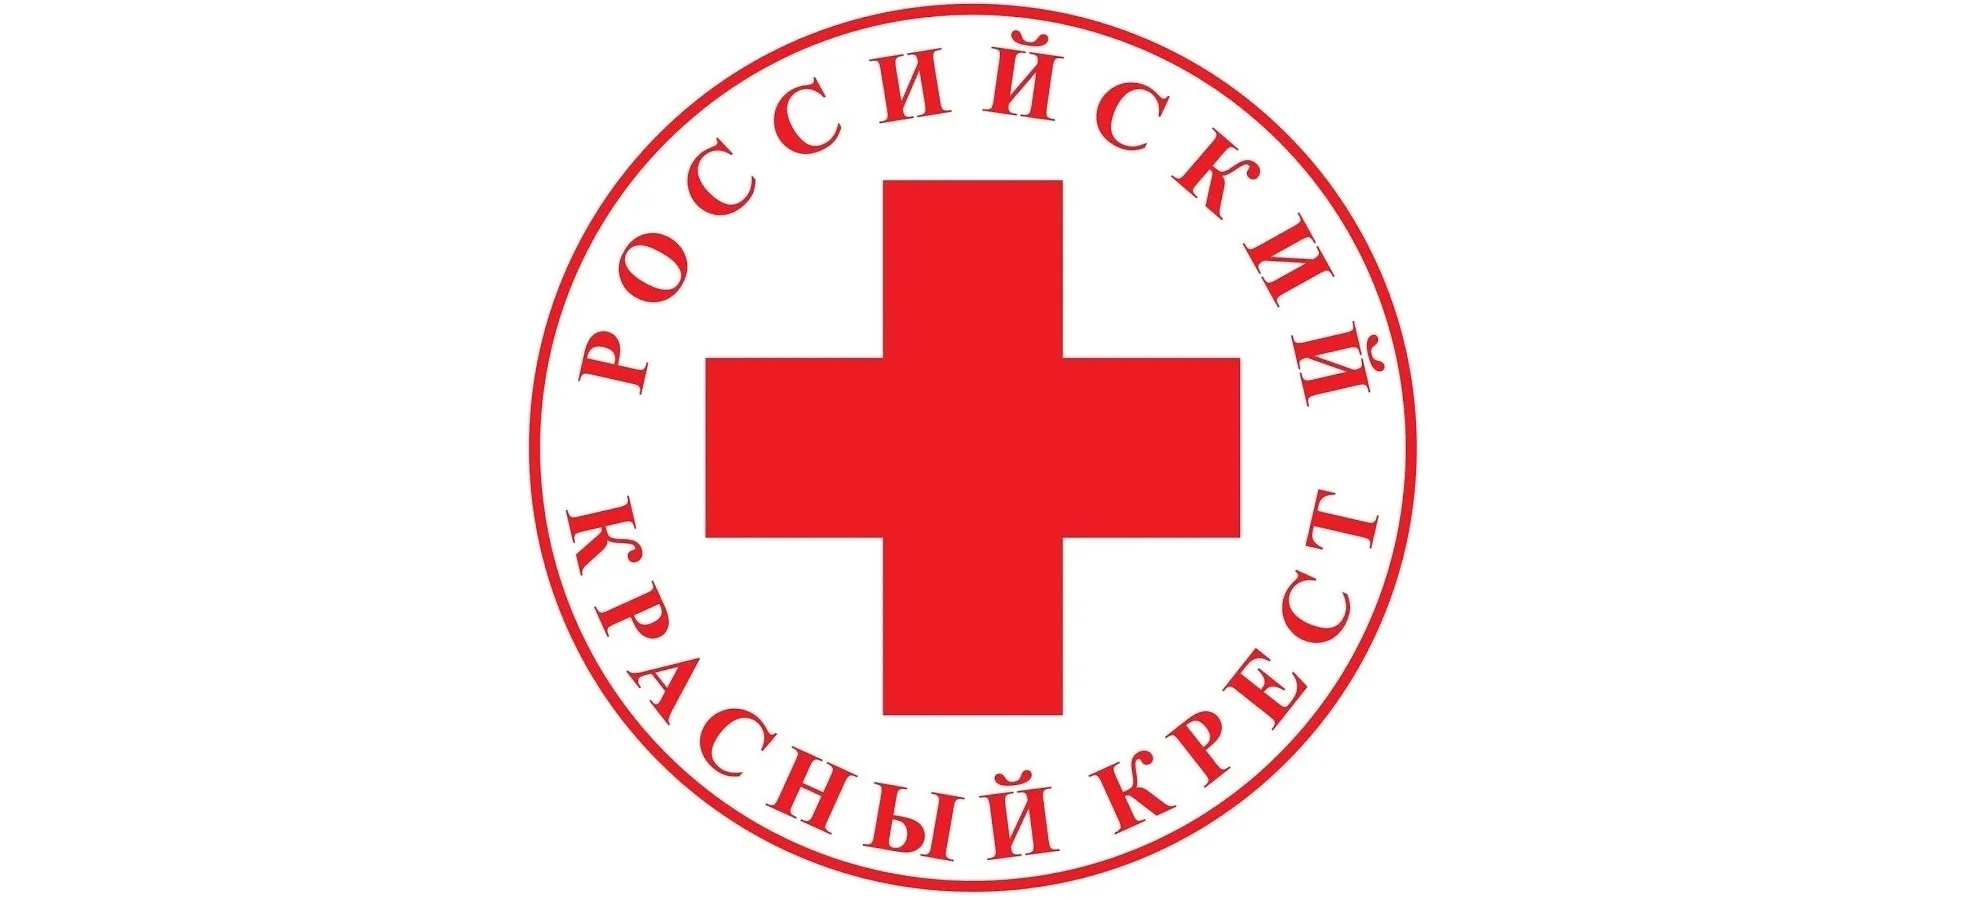 Региональное отделение красного креста